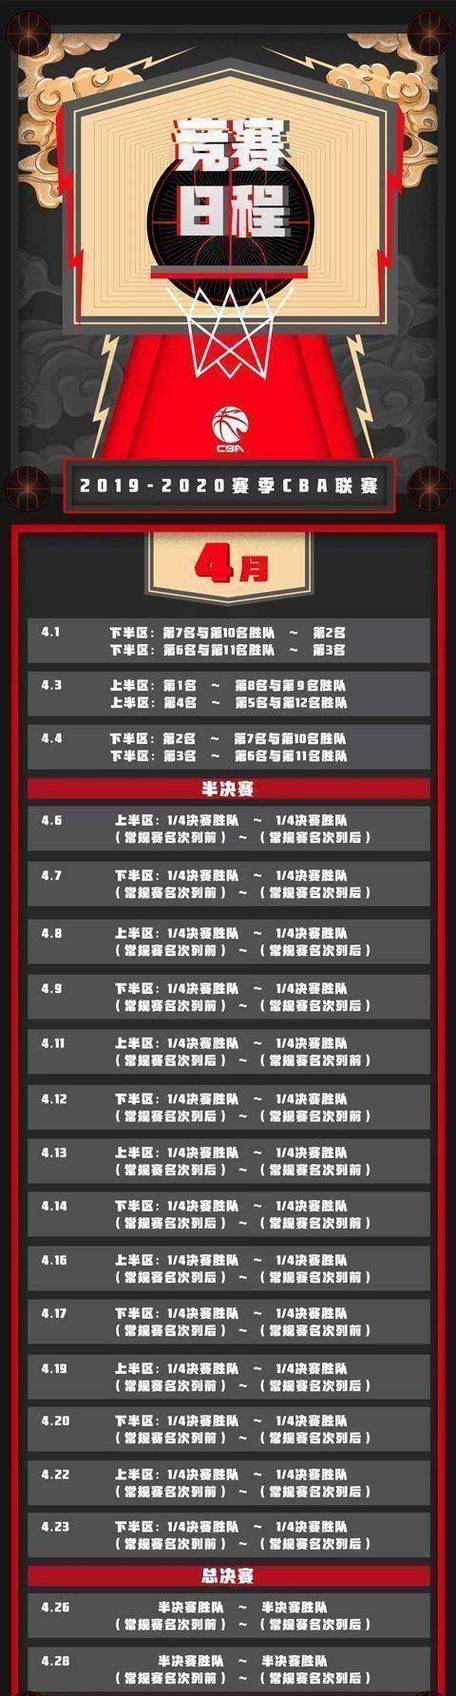 中国男篮赛程今天